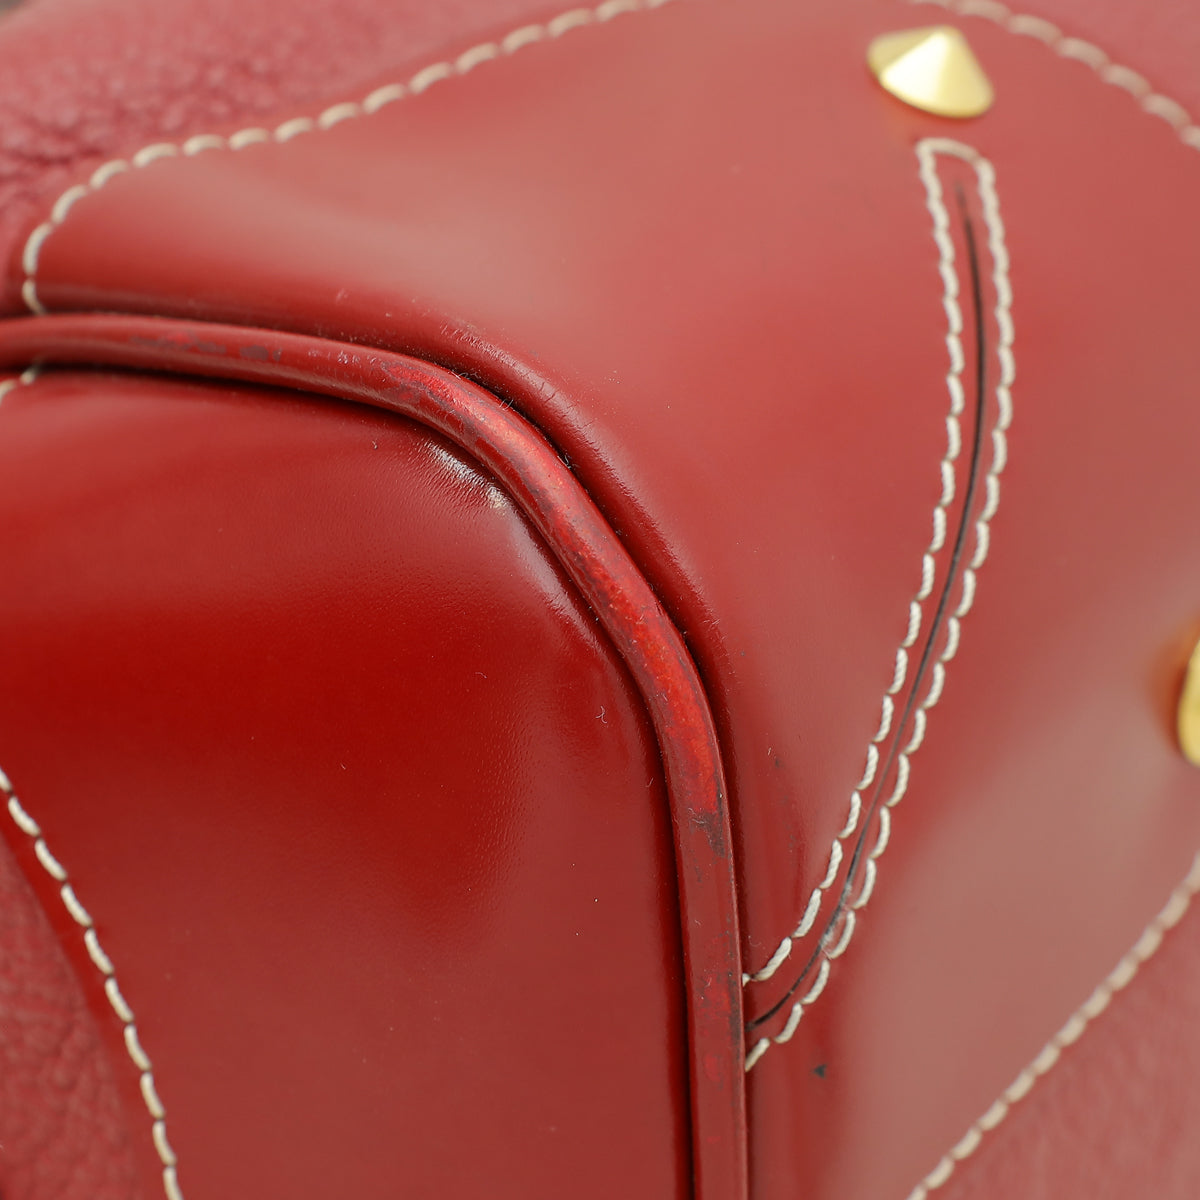 Louis Vuitton Tanami Red Suhali Le Radieux Bag